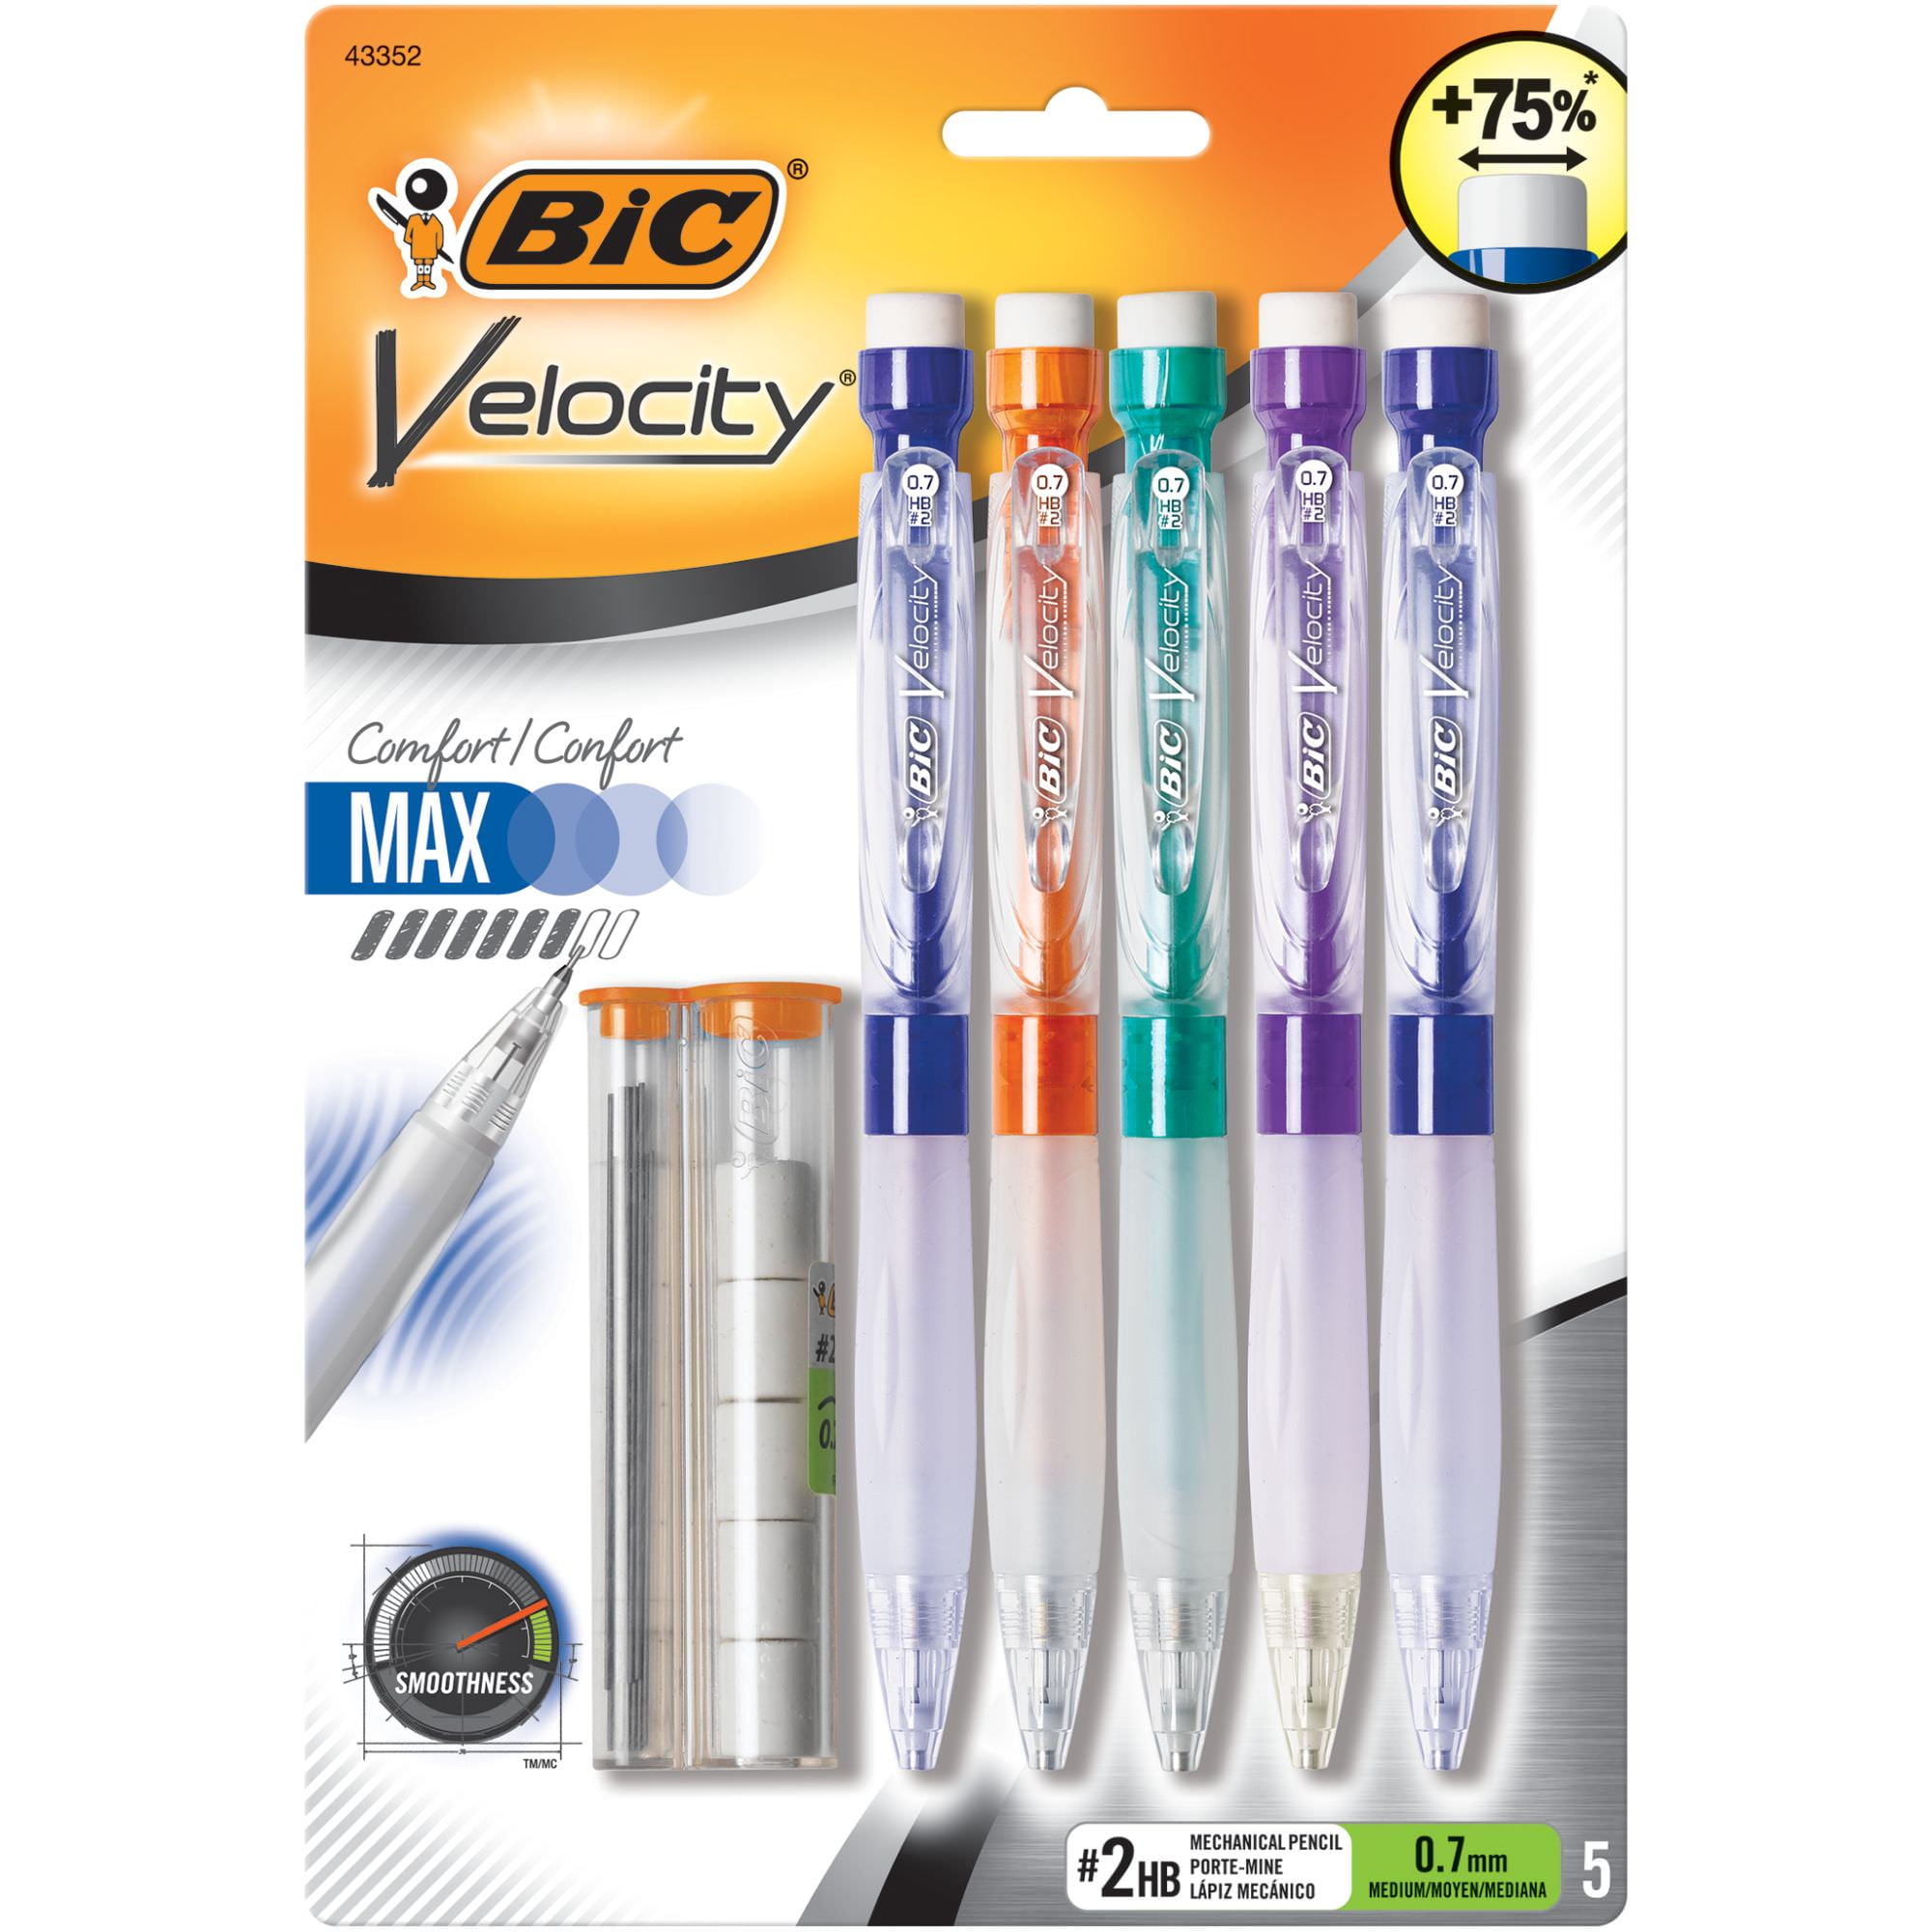 BIC Velocity Max #2 Mechanical Pencils, Assorted Color Barrels, Count 